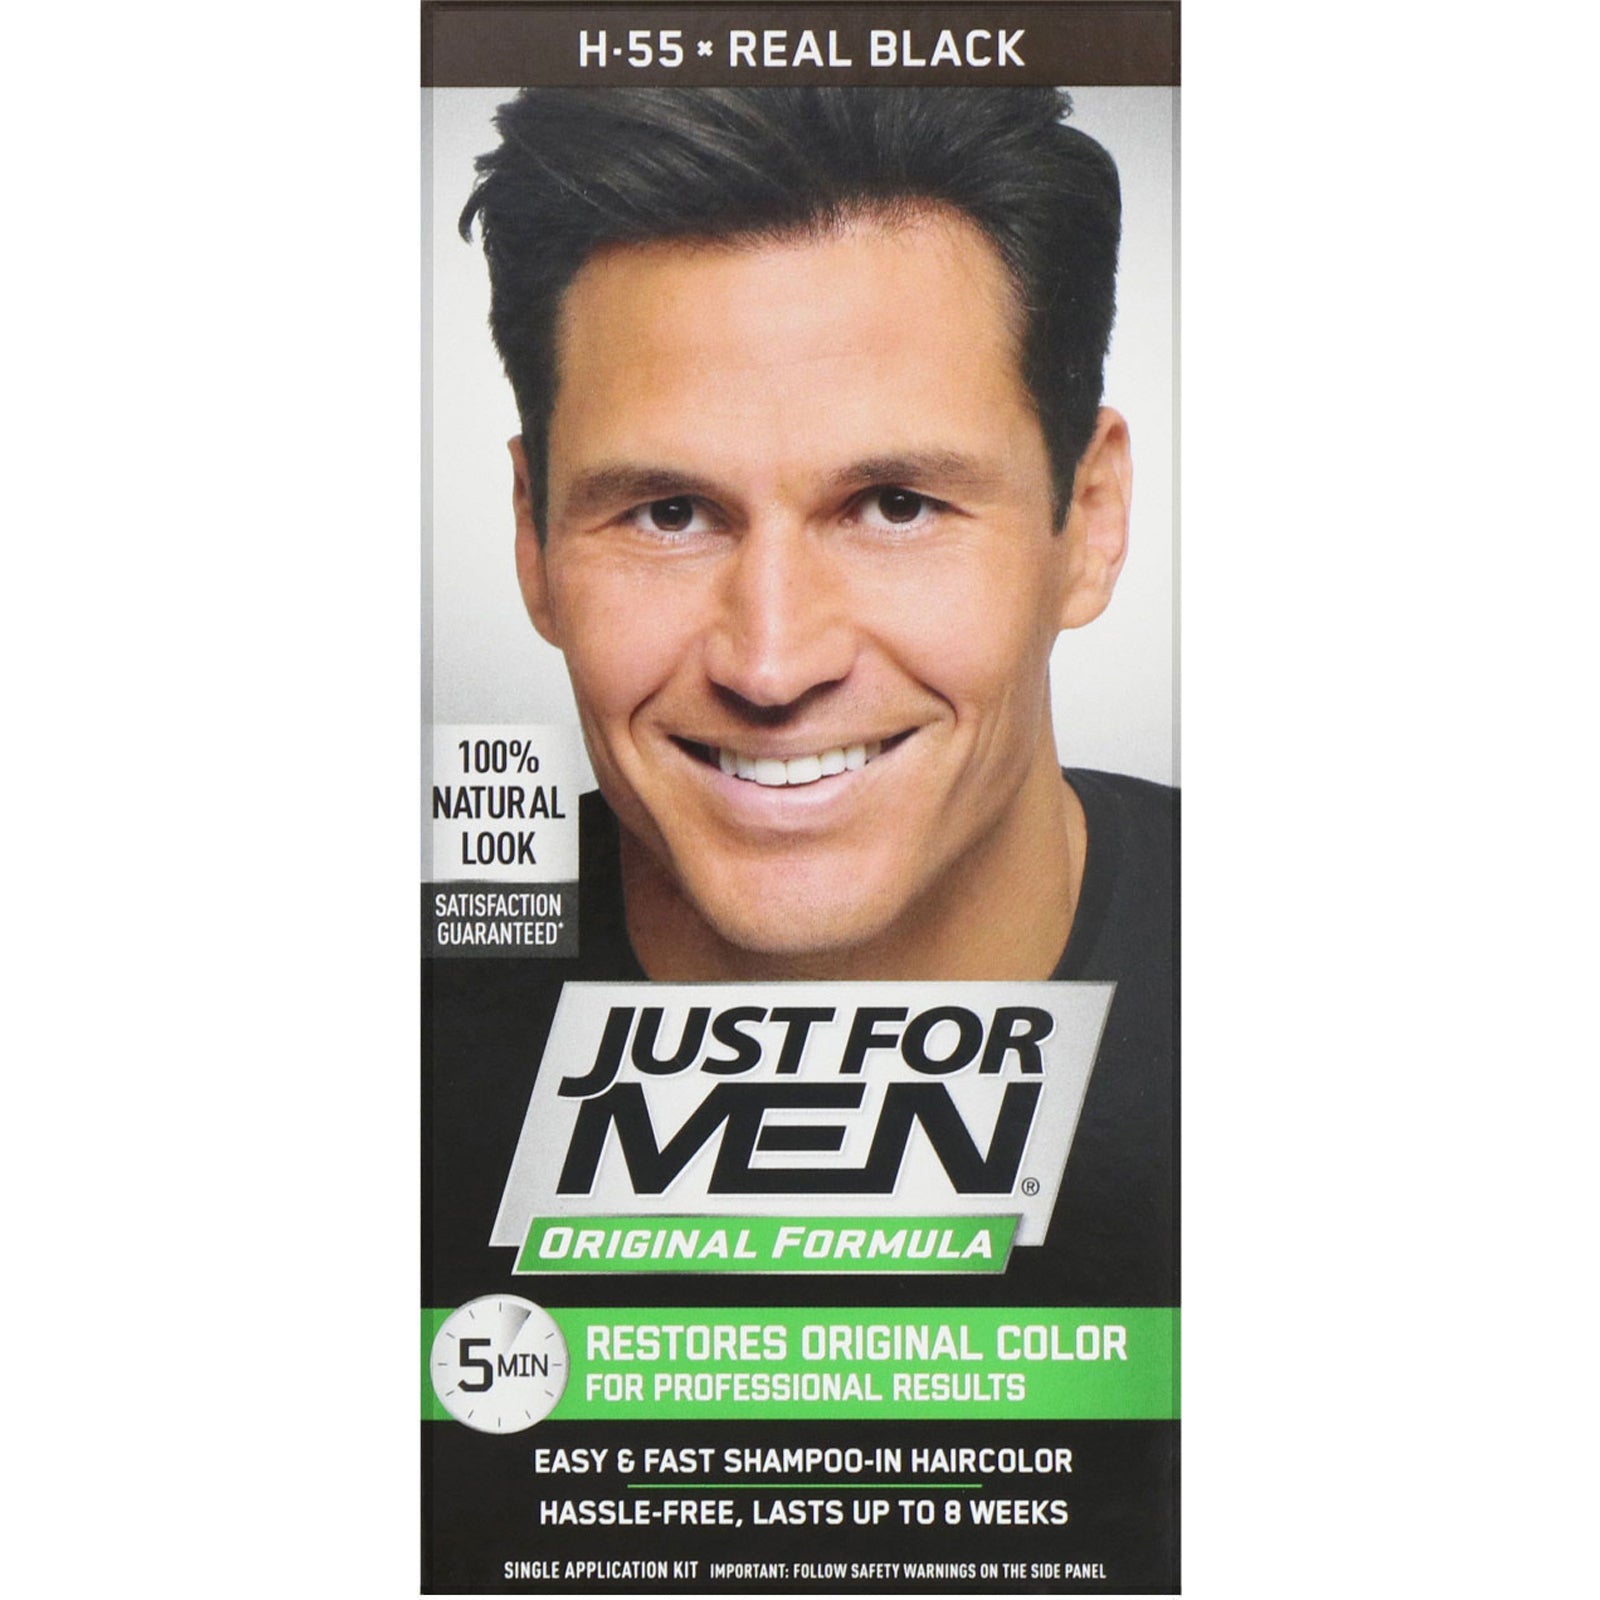 Just for Men, Original Formula Men's Hair Color, Real Black H-55, Single Application Kit